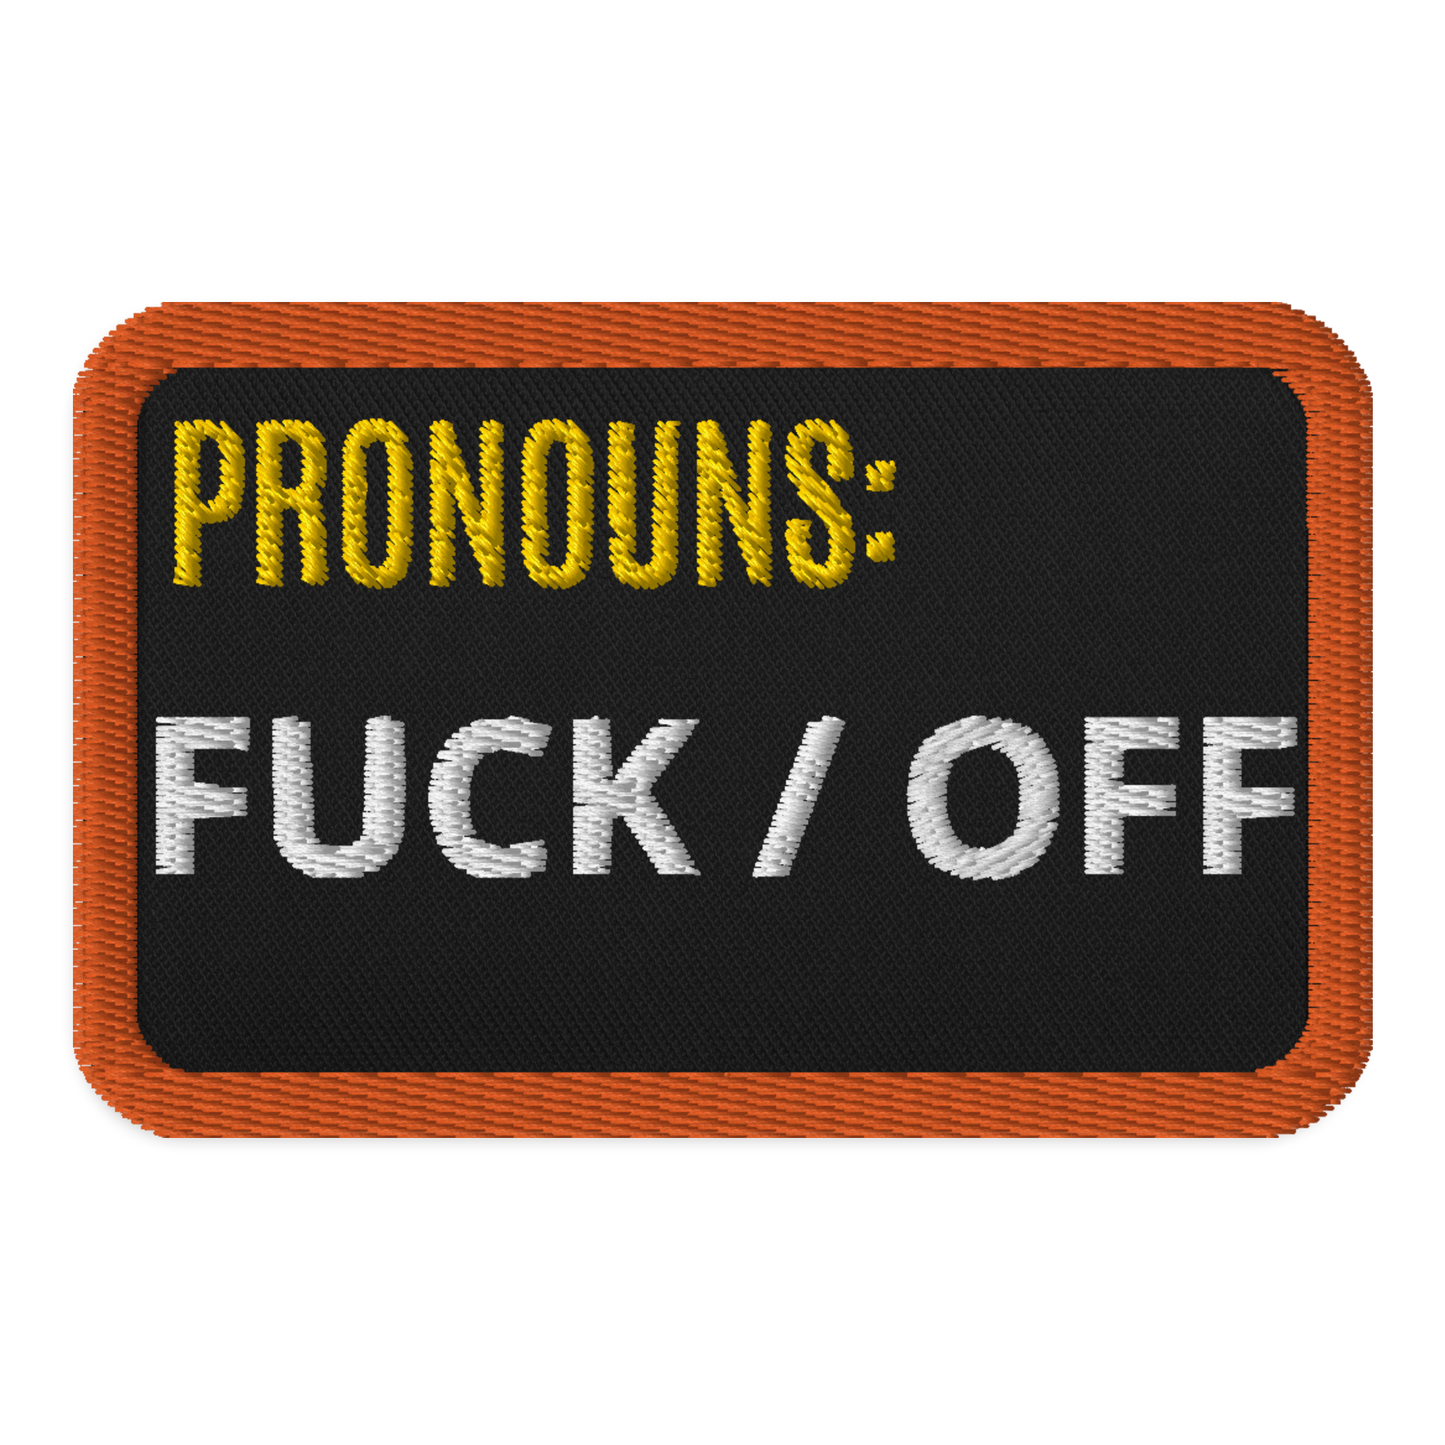 Meme Patches: Fuck/Off Pronouns